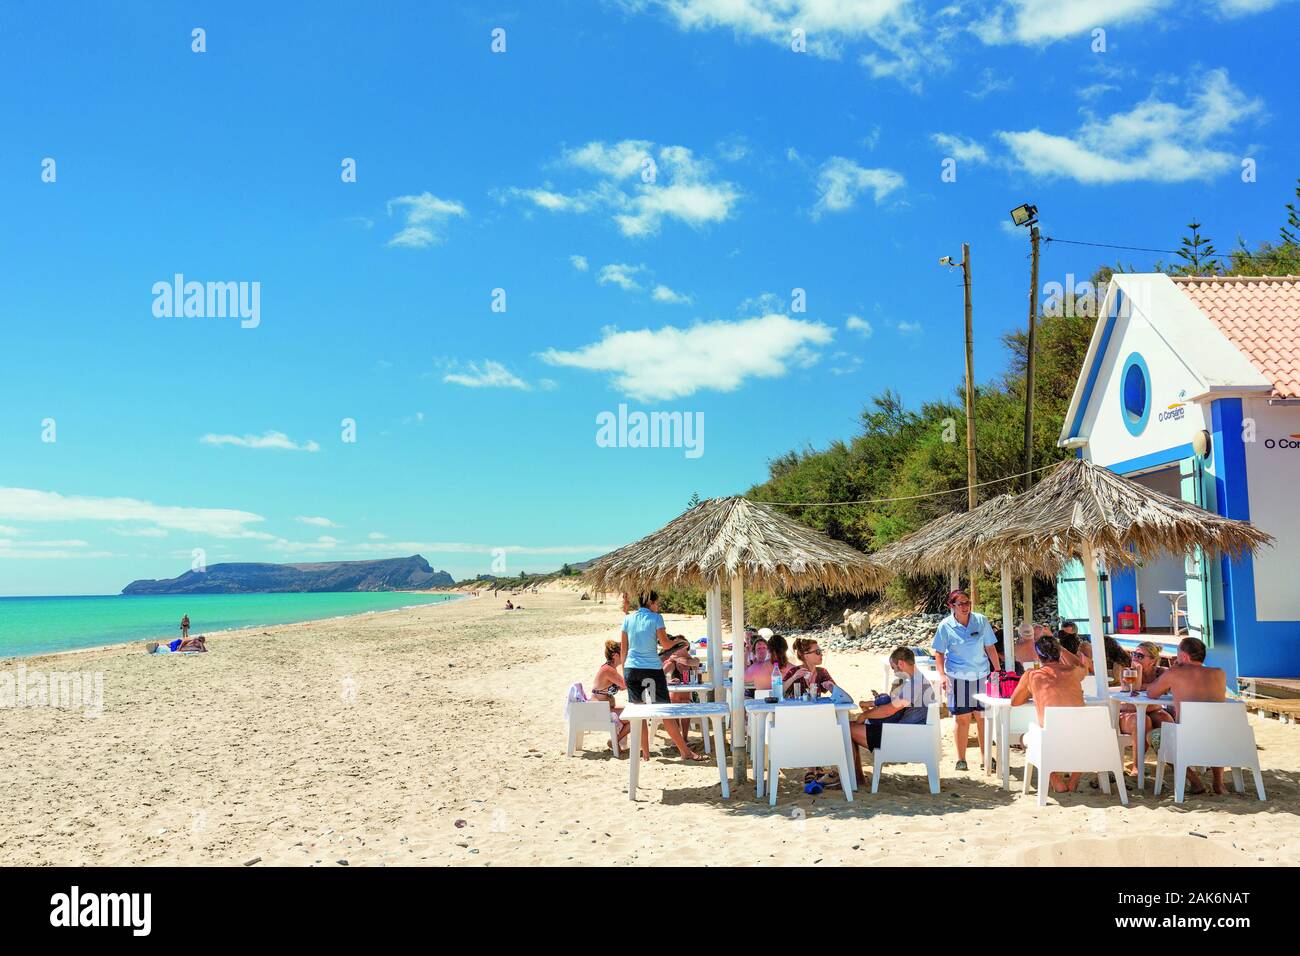 Insel Porto Santo: Beach Bar "O Corsario" an der Praia de Porto Santo |  usage worldwide Stock Photo - Alamy